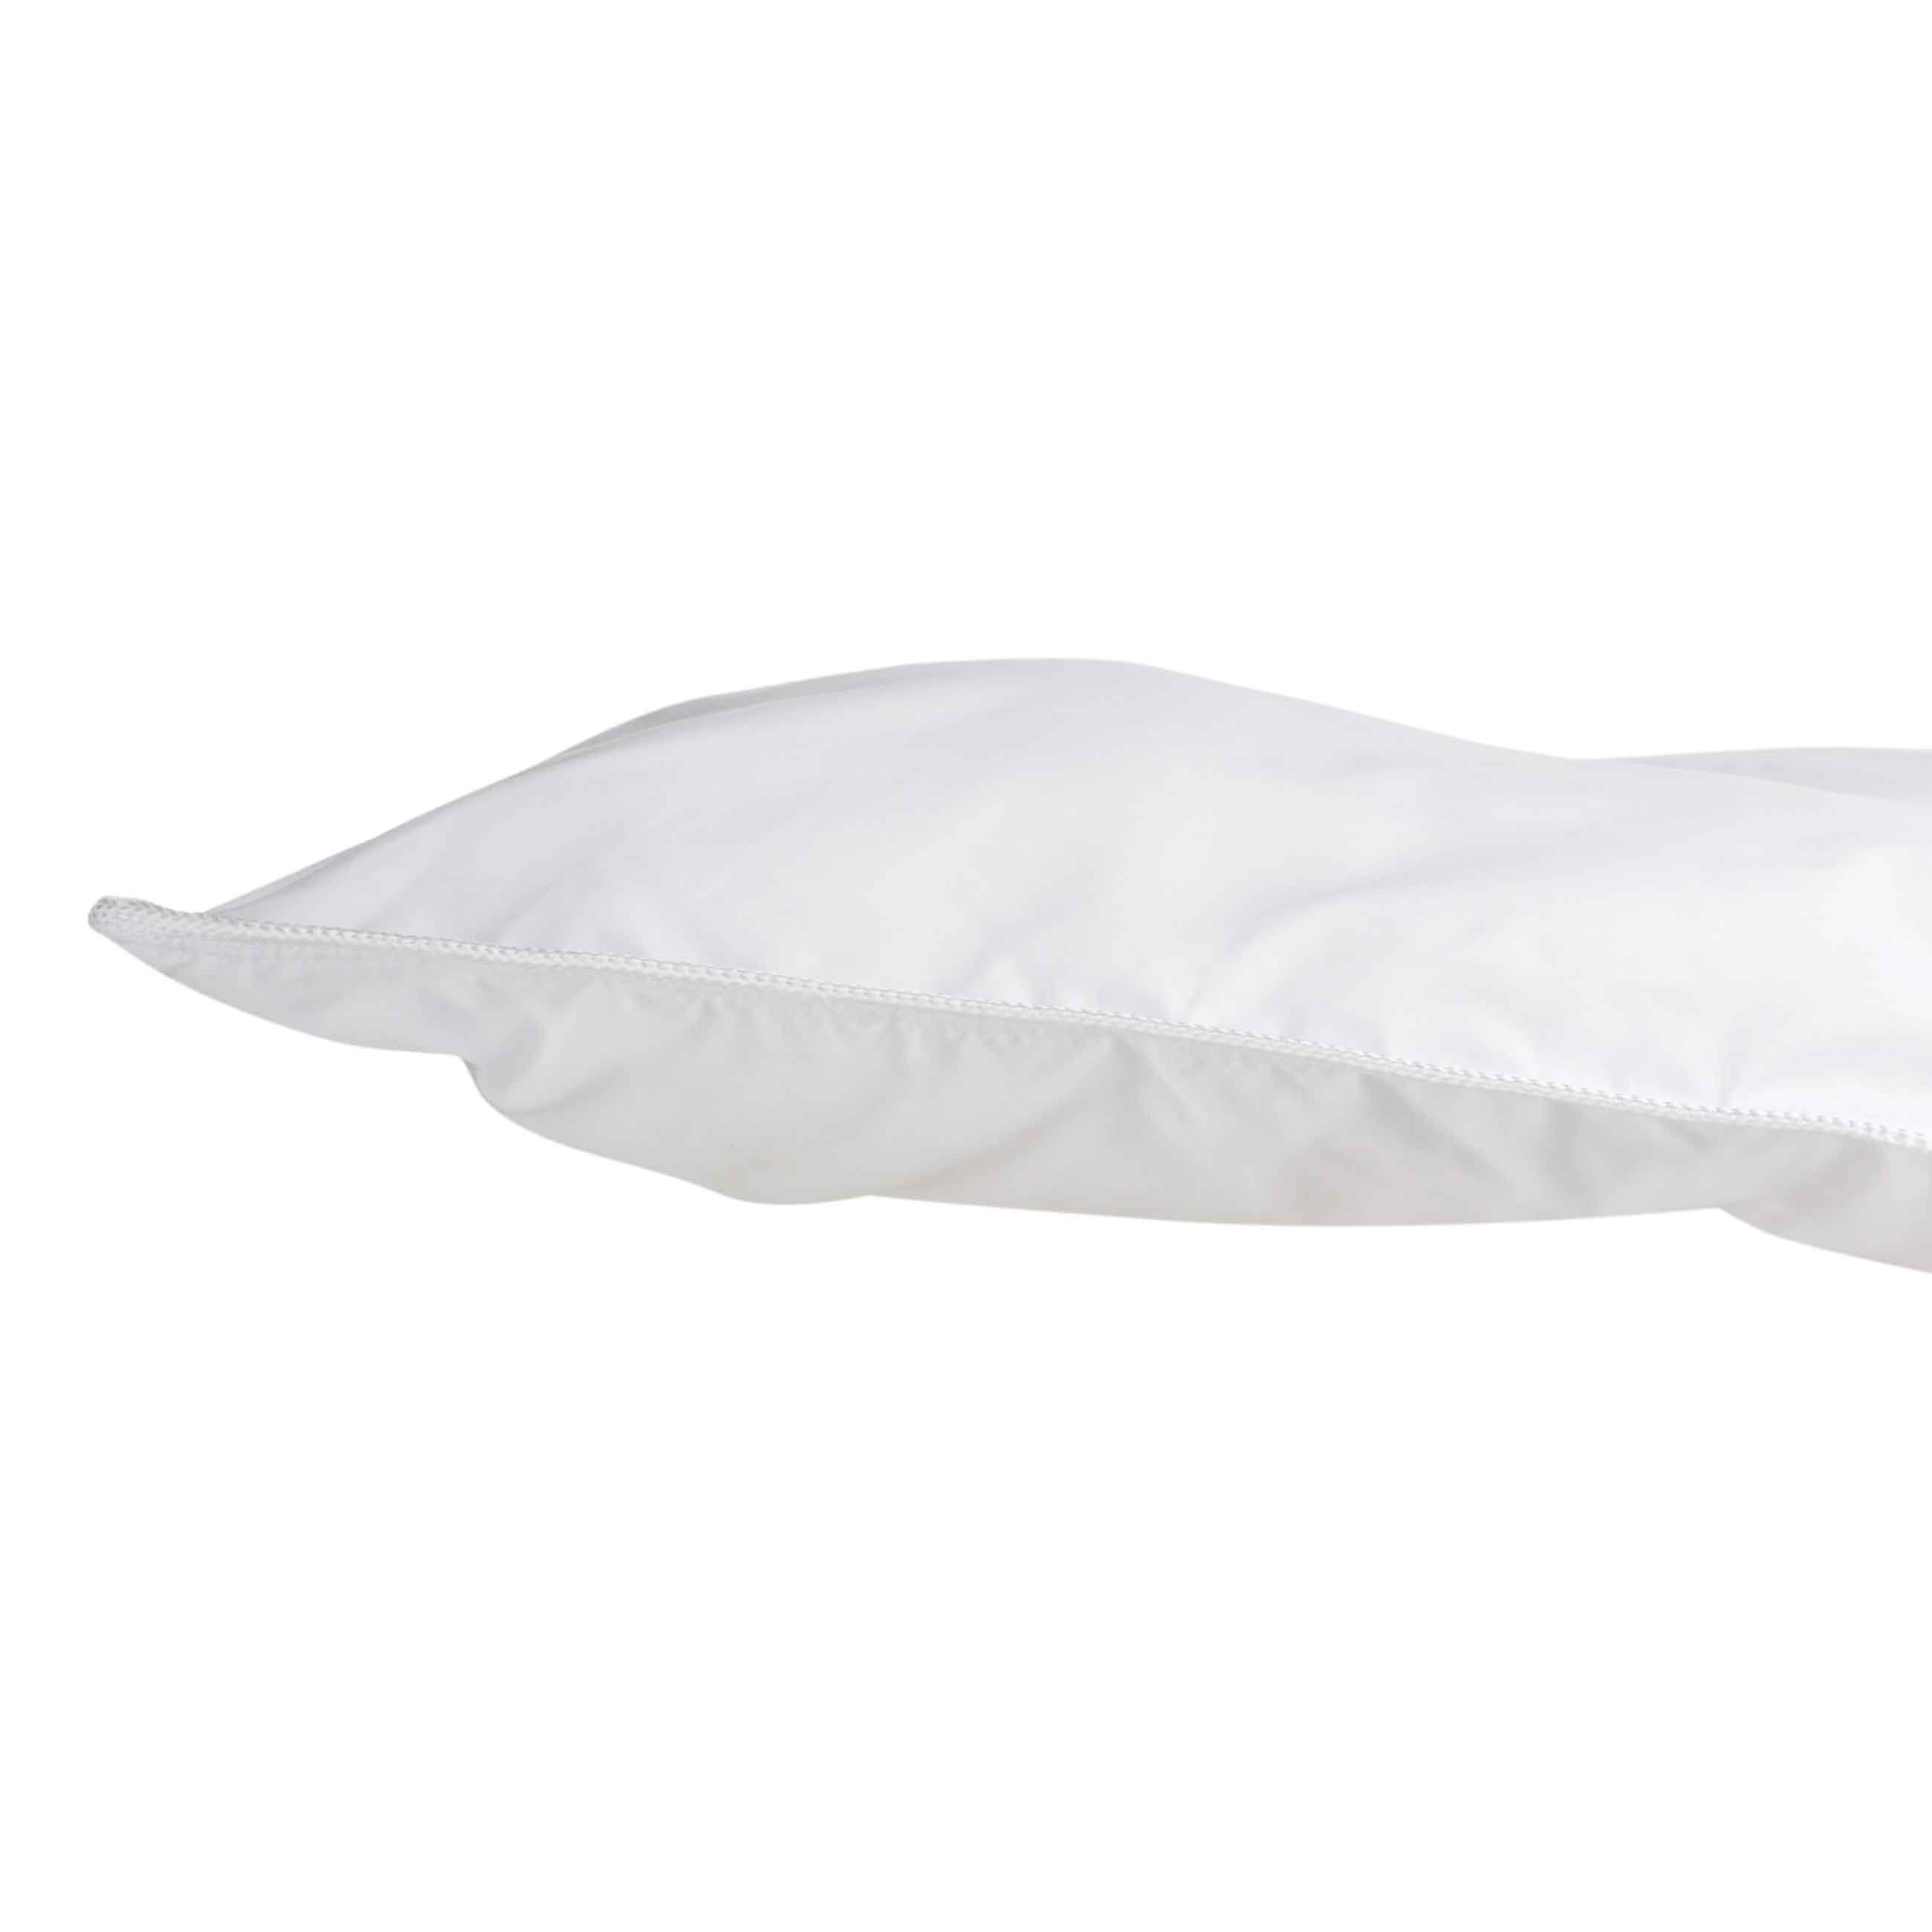 Одеяло, 140х200 см, хлопок/микрофибра, Soft cotton изображение № 2